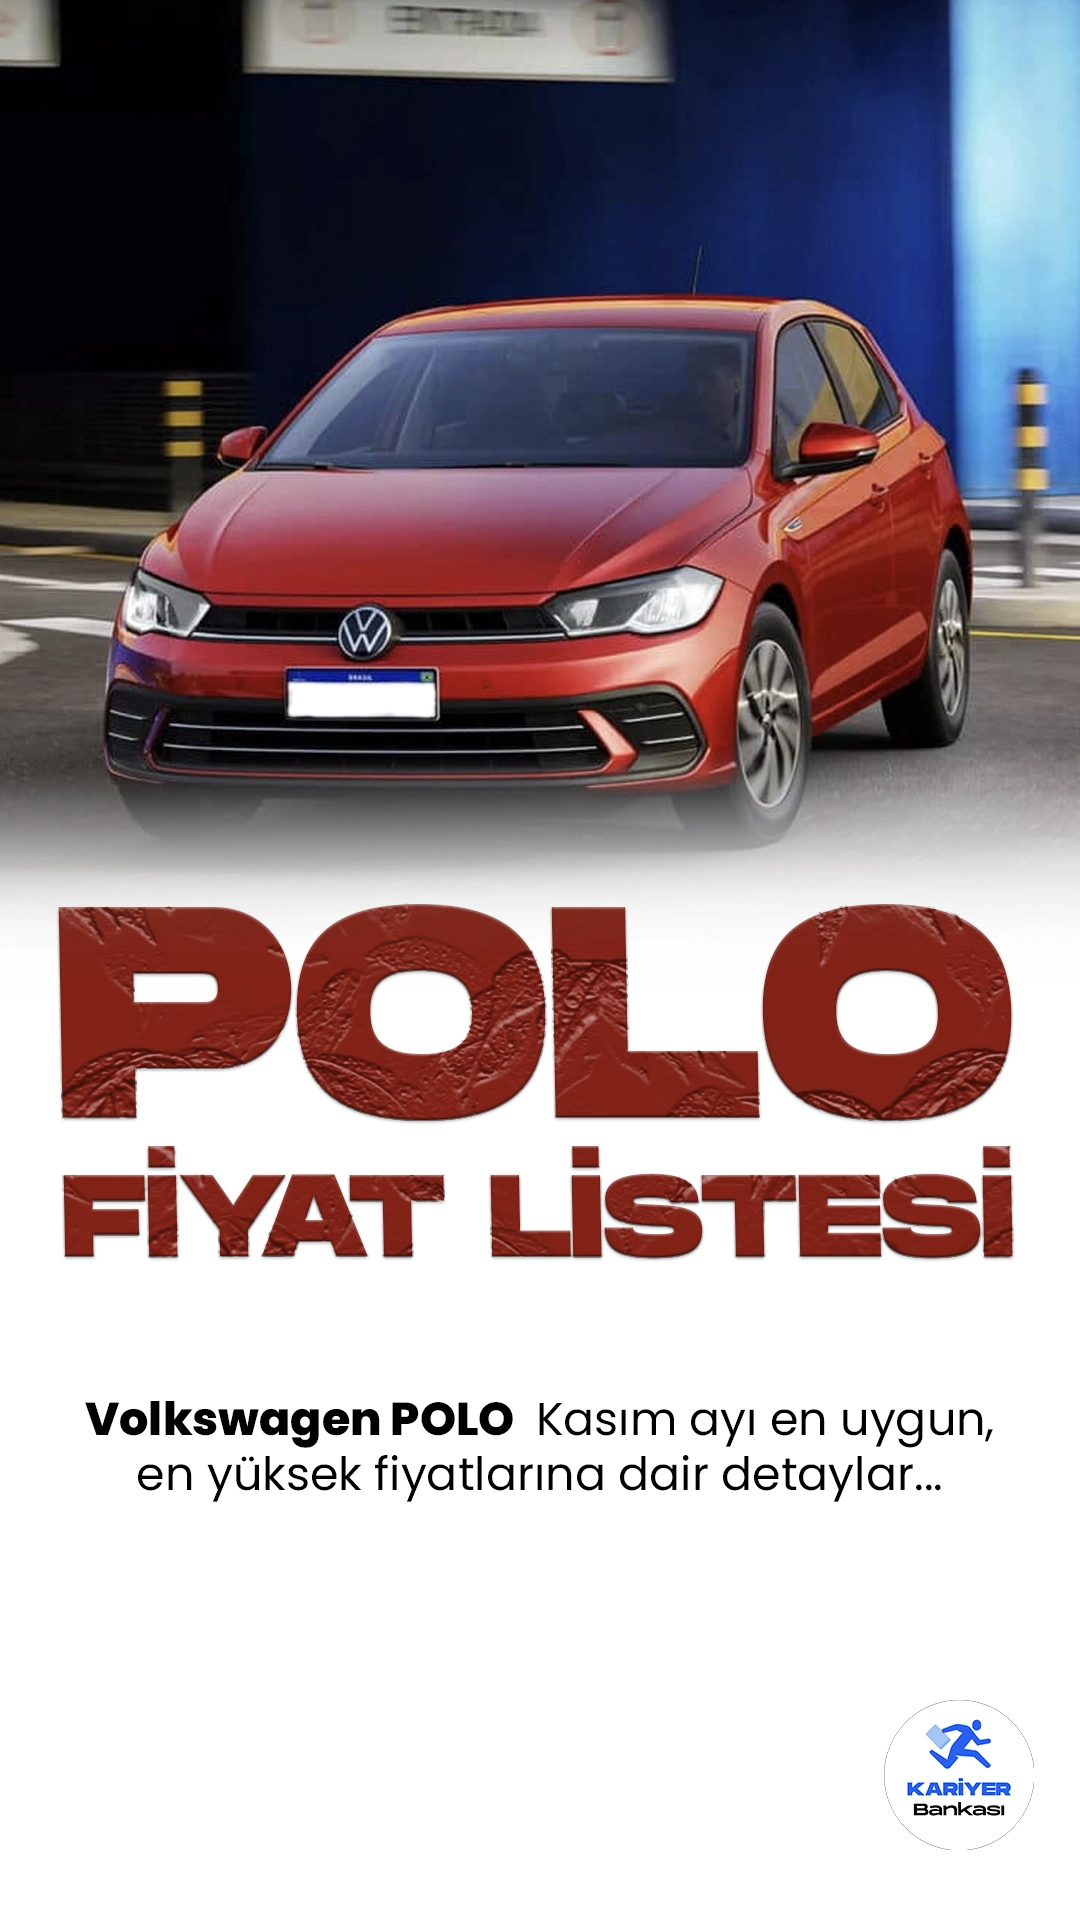 Volkswagen Polo Kasım 2023 Fiyat Listesi.Volkswagen Polo, Alman otomotiv devi Volkswagen'in kompakt sınıftaki başarılı modelidir. Şıklığı, performansı ve teknolojik özellikleriyle dikkat çeken Polo, sürücülere keyifli bir sürüş deneyimi sunmaktadır. Geniş iç mekanı, güvenlik donanımları ve yakıt verimliliği ile öne çıkan araç, şehir içi ve uzun yolculuklarda güvenilir bir tercih olarak öne çıkıyor.